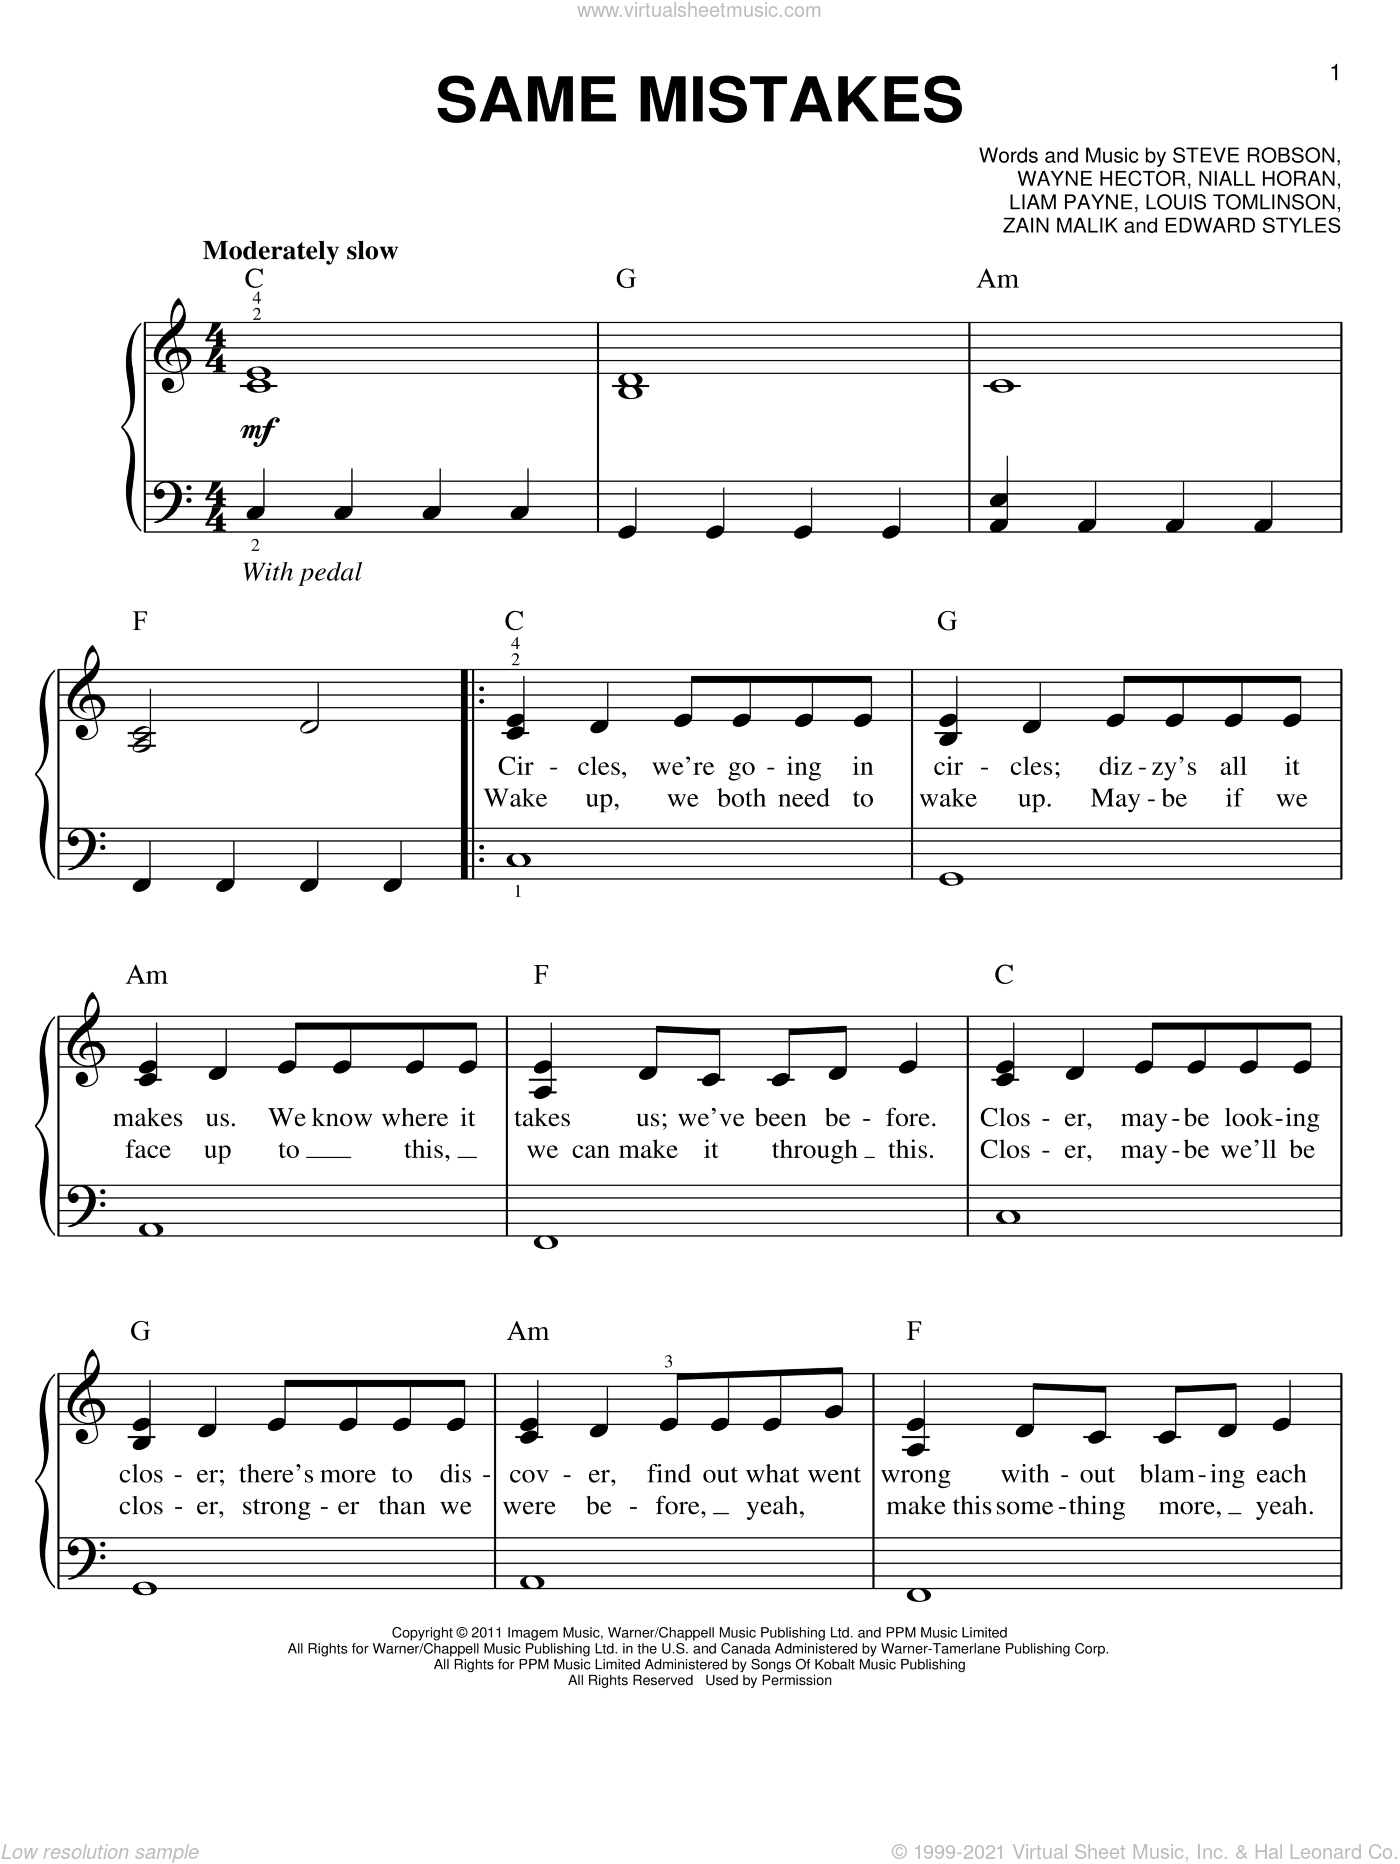 James Blunt-Same Mistake Sheet Music pdf, - Free Score Download ★